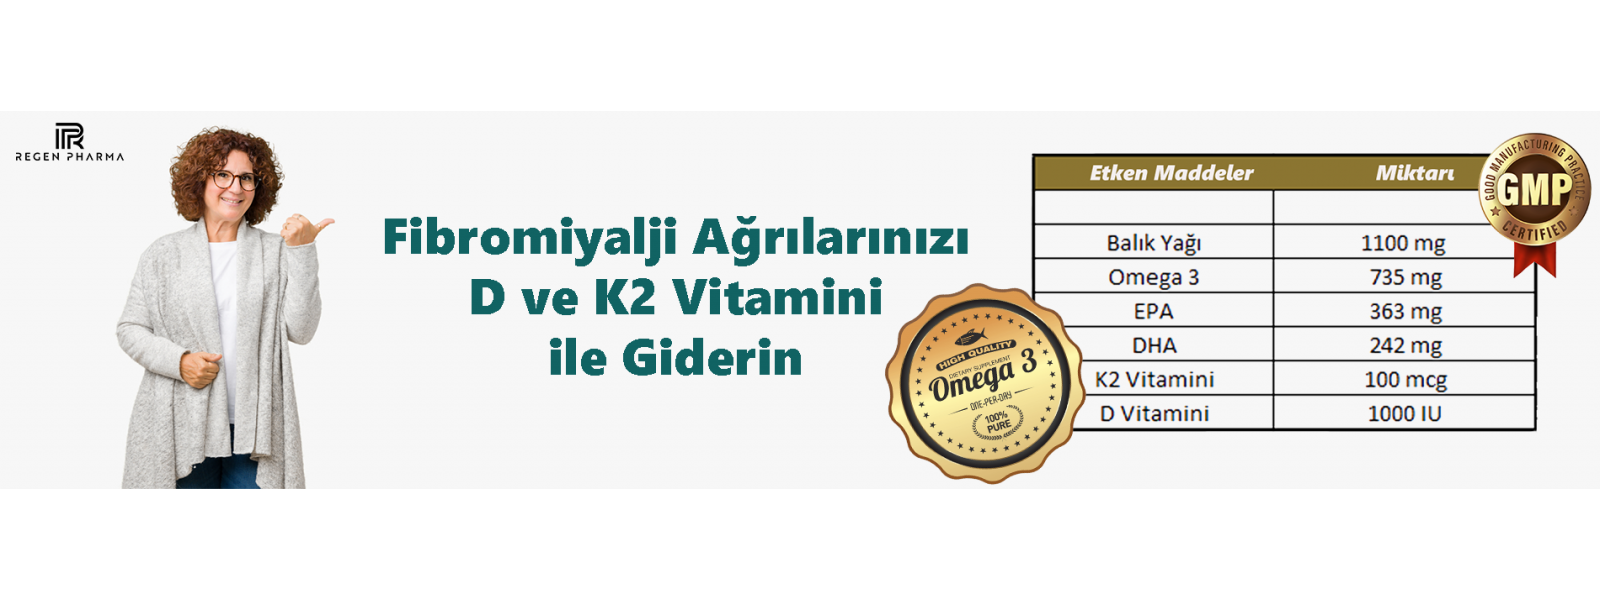 KOD3 K2 Vitamini Omega3 ve D Vitamini içeren Takviye Edici Gıda